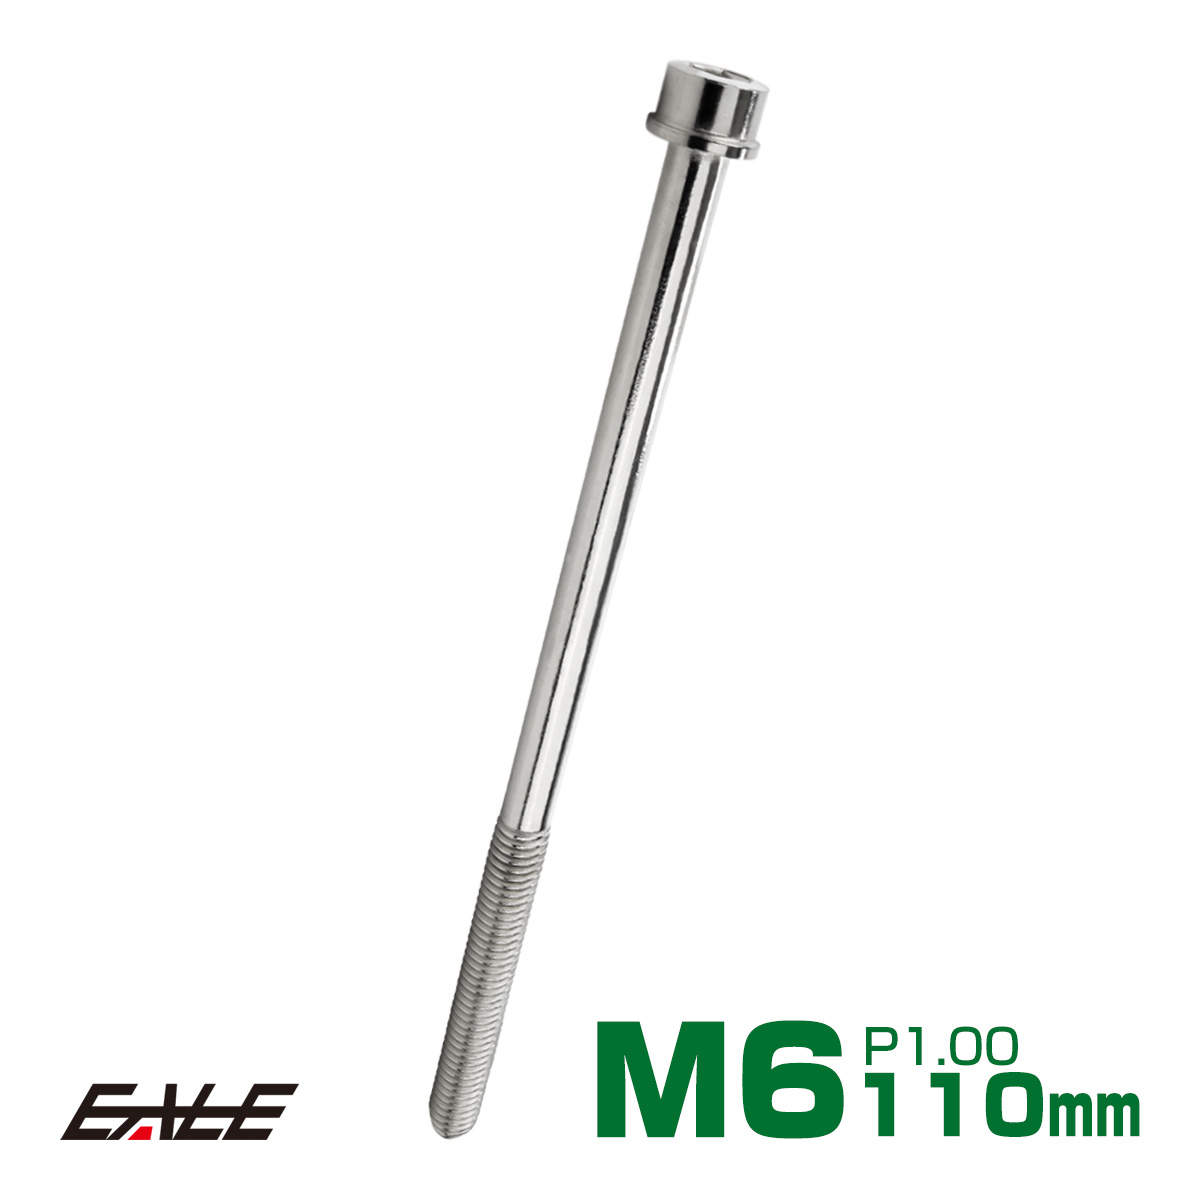 インスタントロックｲﾝｽﾀﾝﾄﾛｯｸ M12 ｽﾃﾝﾚｽ(303､304､XM7等) 生地(または標準) ネジ・釘・金属素材 